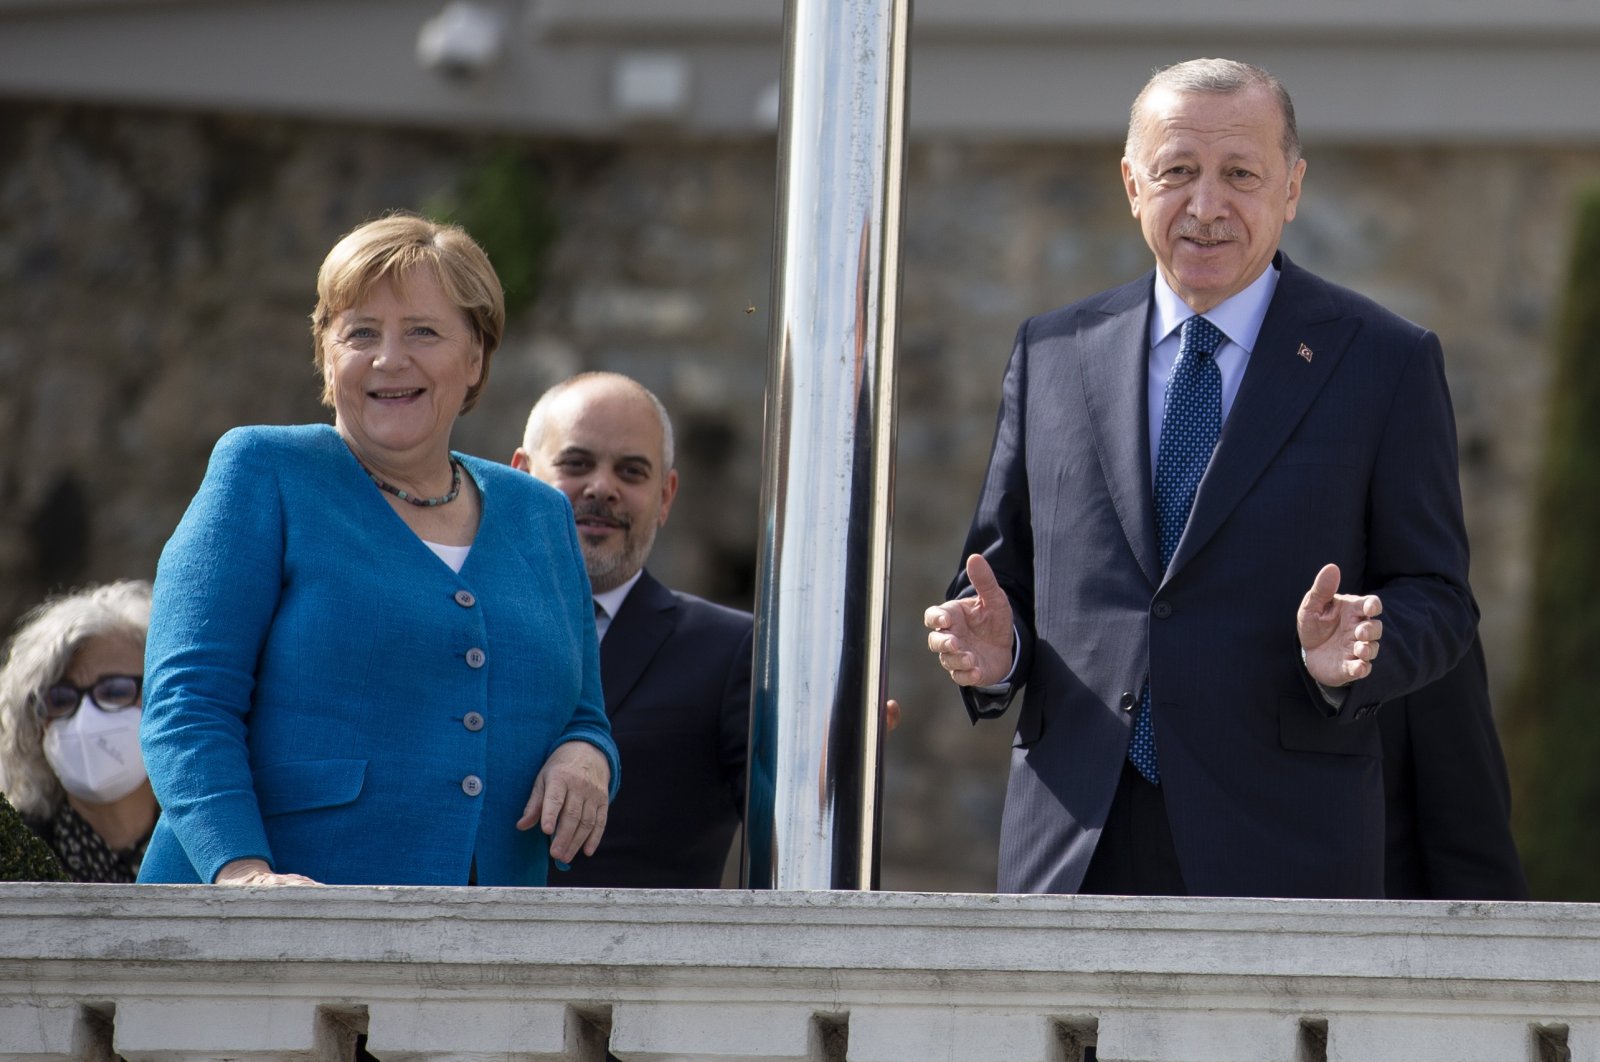 Hubungan Turki-Jerman harus dipandu oleh akal sehat: Erdogan